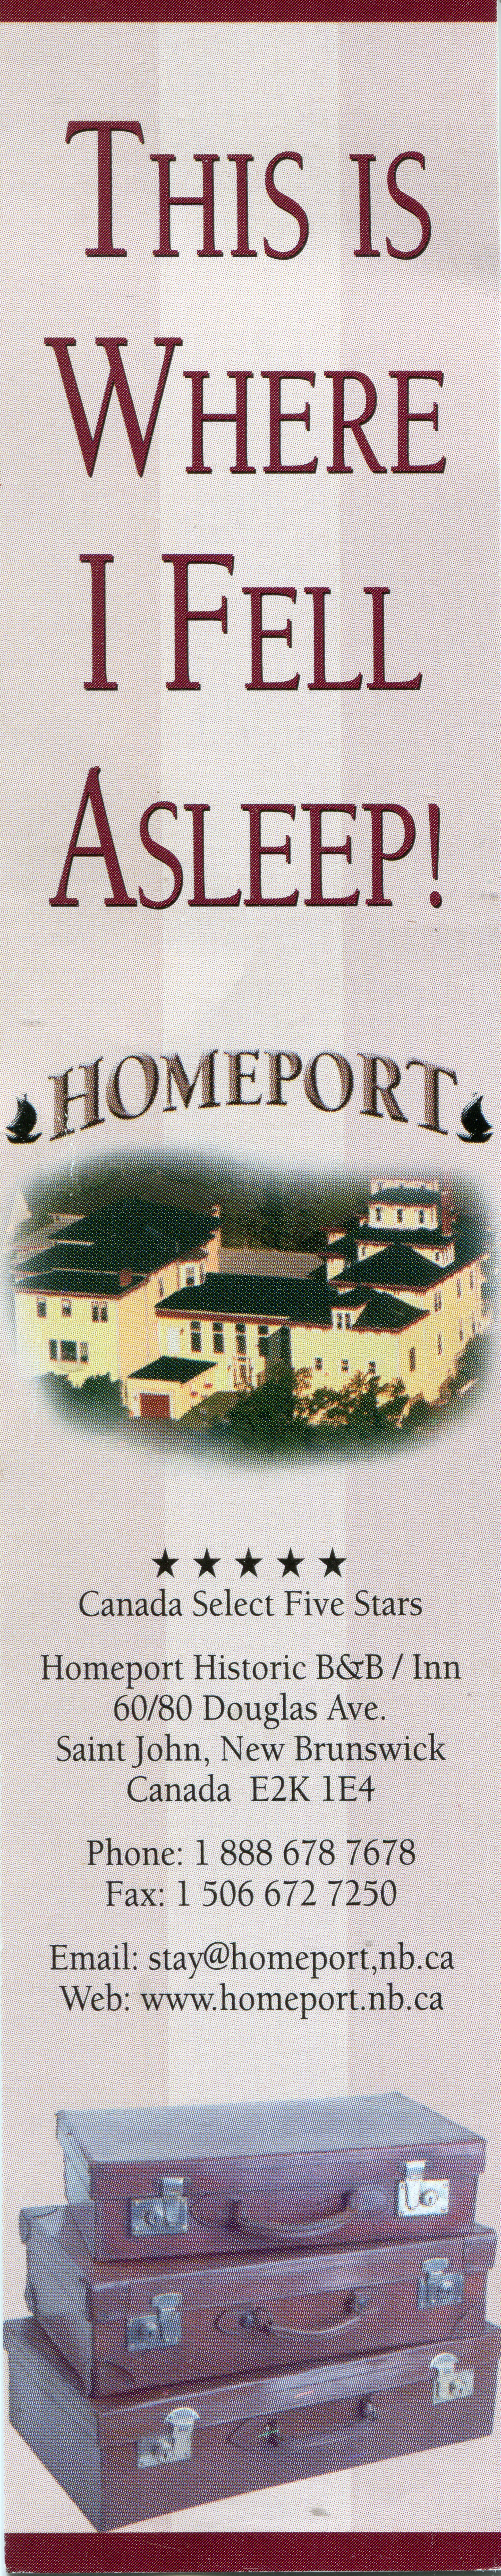 21. Saint John Homeport001.jpg